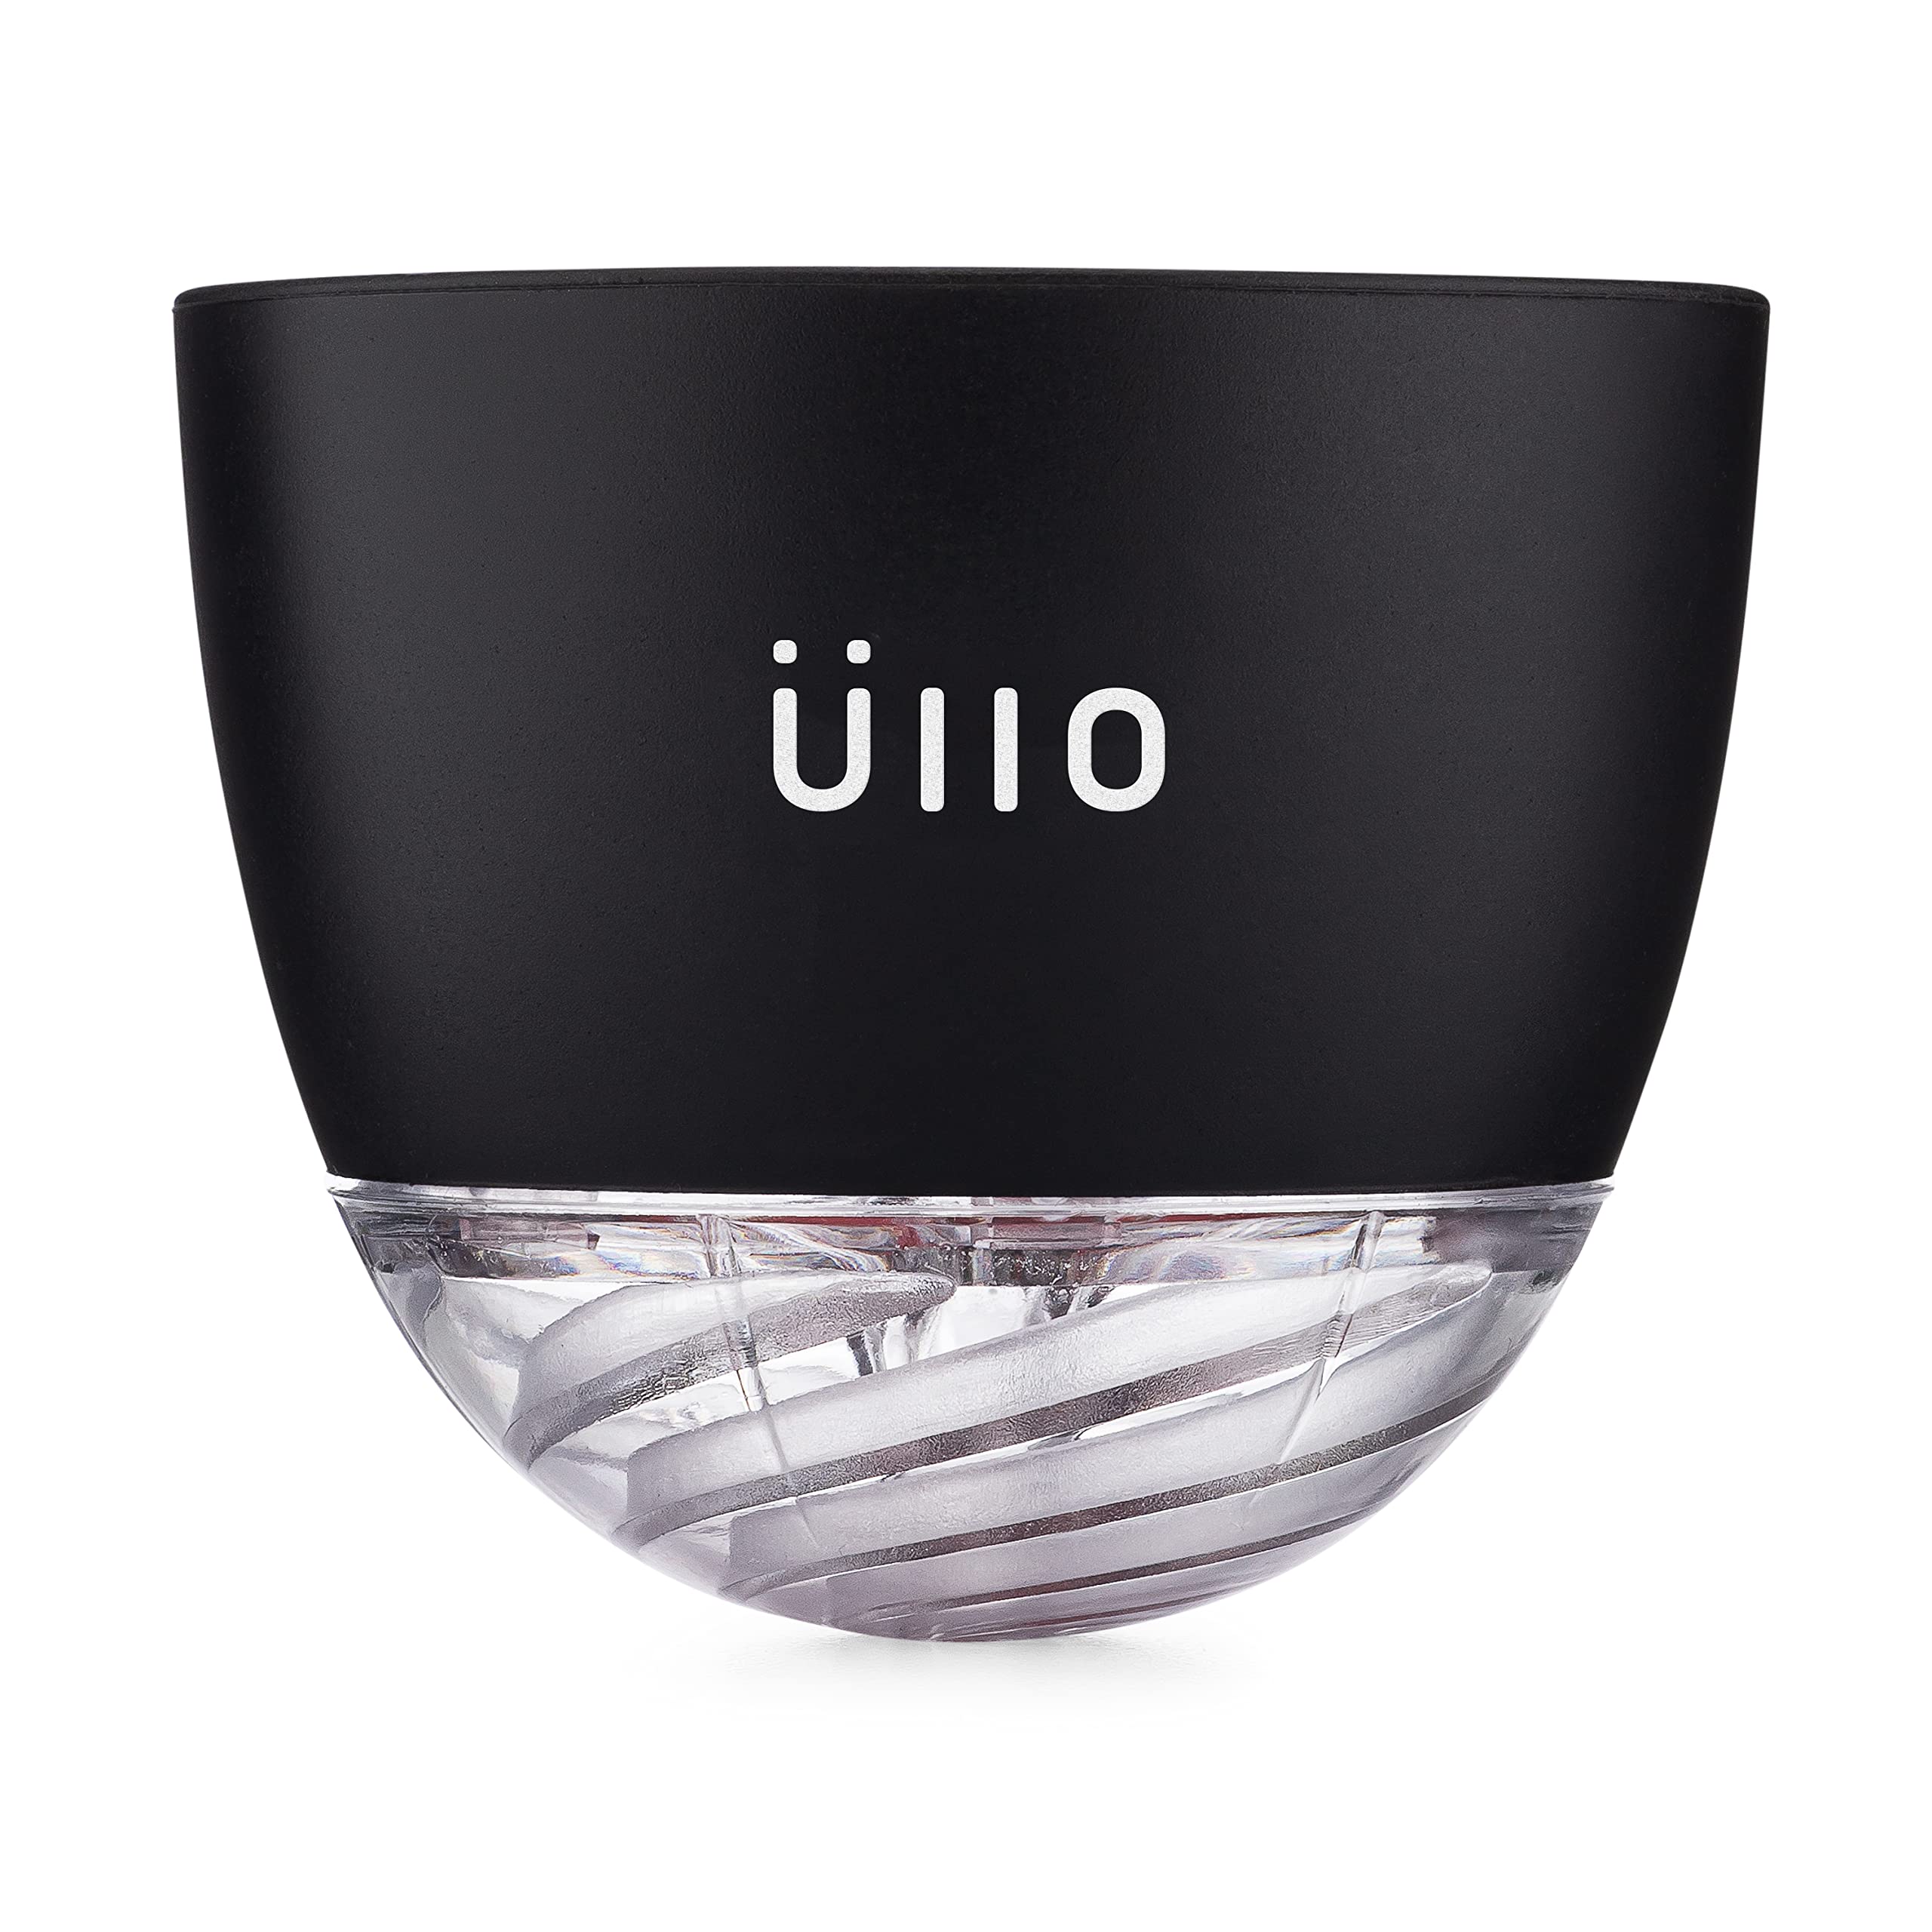 ULLO 带 4 个选择性亚硫酸盐过滤器的葡萄酒净化器。去除亚硫酸盐和组胺，恢复味道，通气，体验纯净葡萄酒的魔...